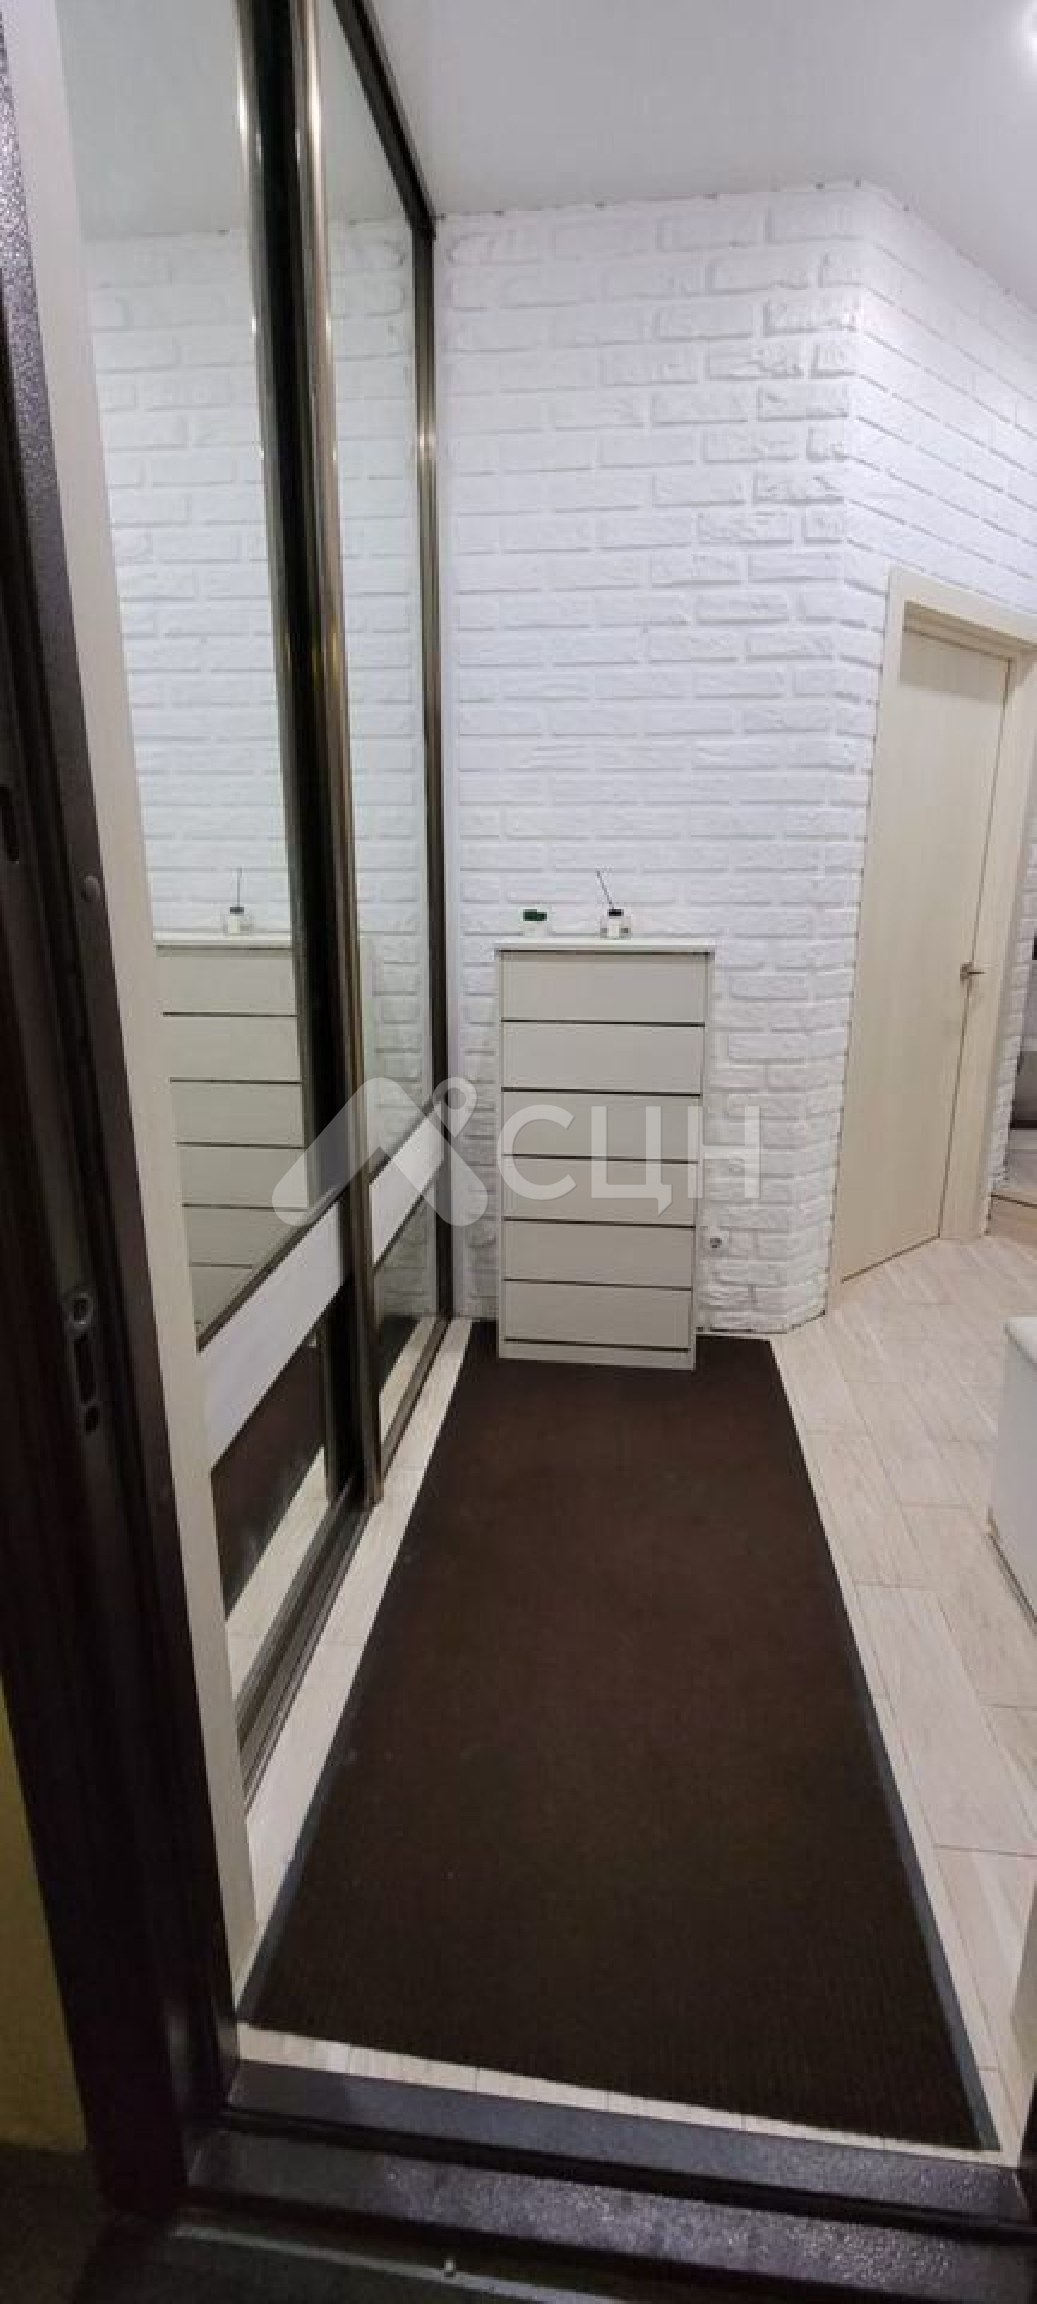 Цены на жилье в Сарове
: Г. Саров, улица Садовая, 66к1, 2-комн квартира, этаж 3 из 5, продажа.